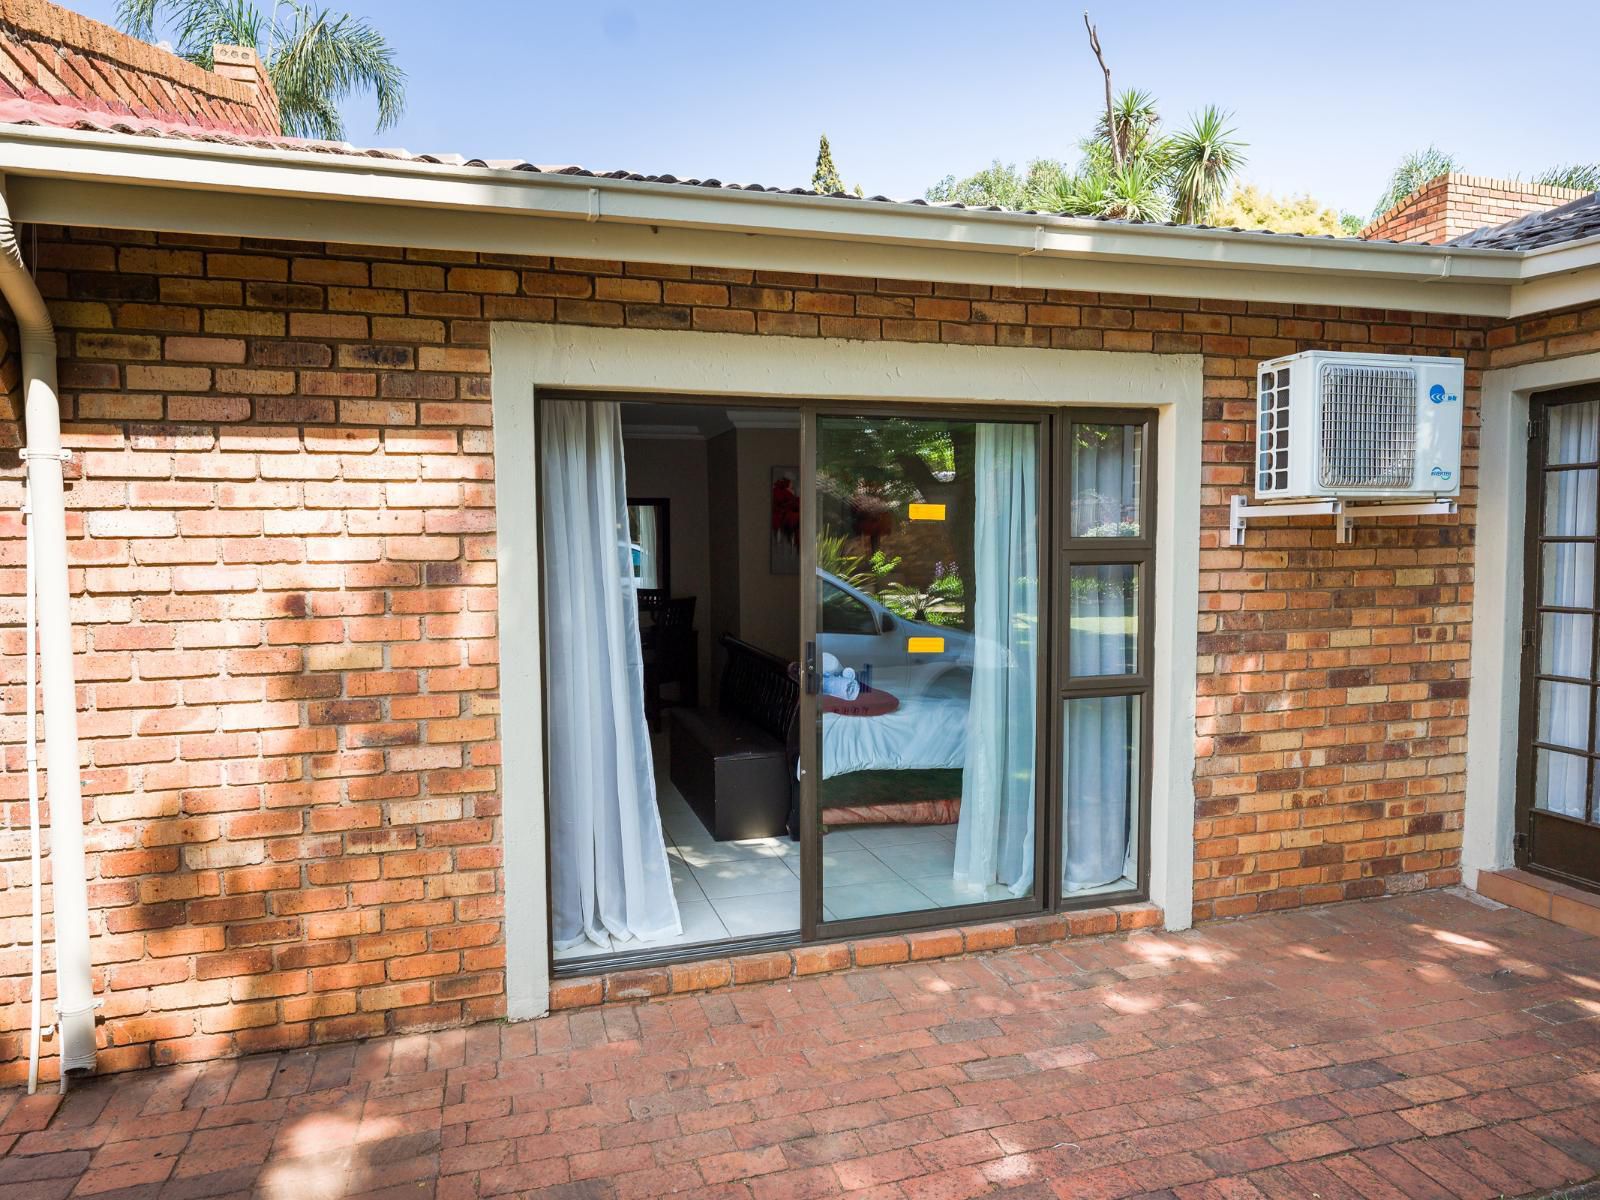 Green Fig Guest House Brakpan Johannesburg Gauteng South Africa Door, Architecture, House, Building, Brick Texture, Texture